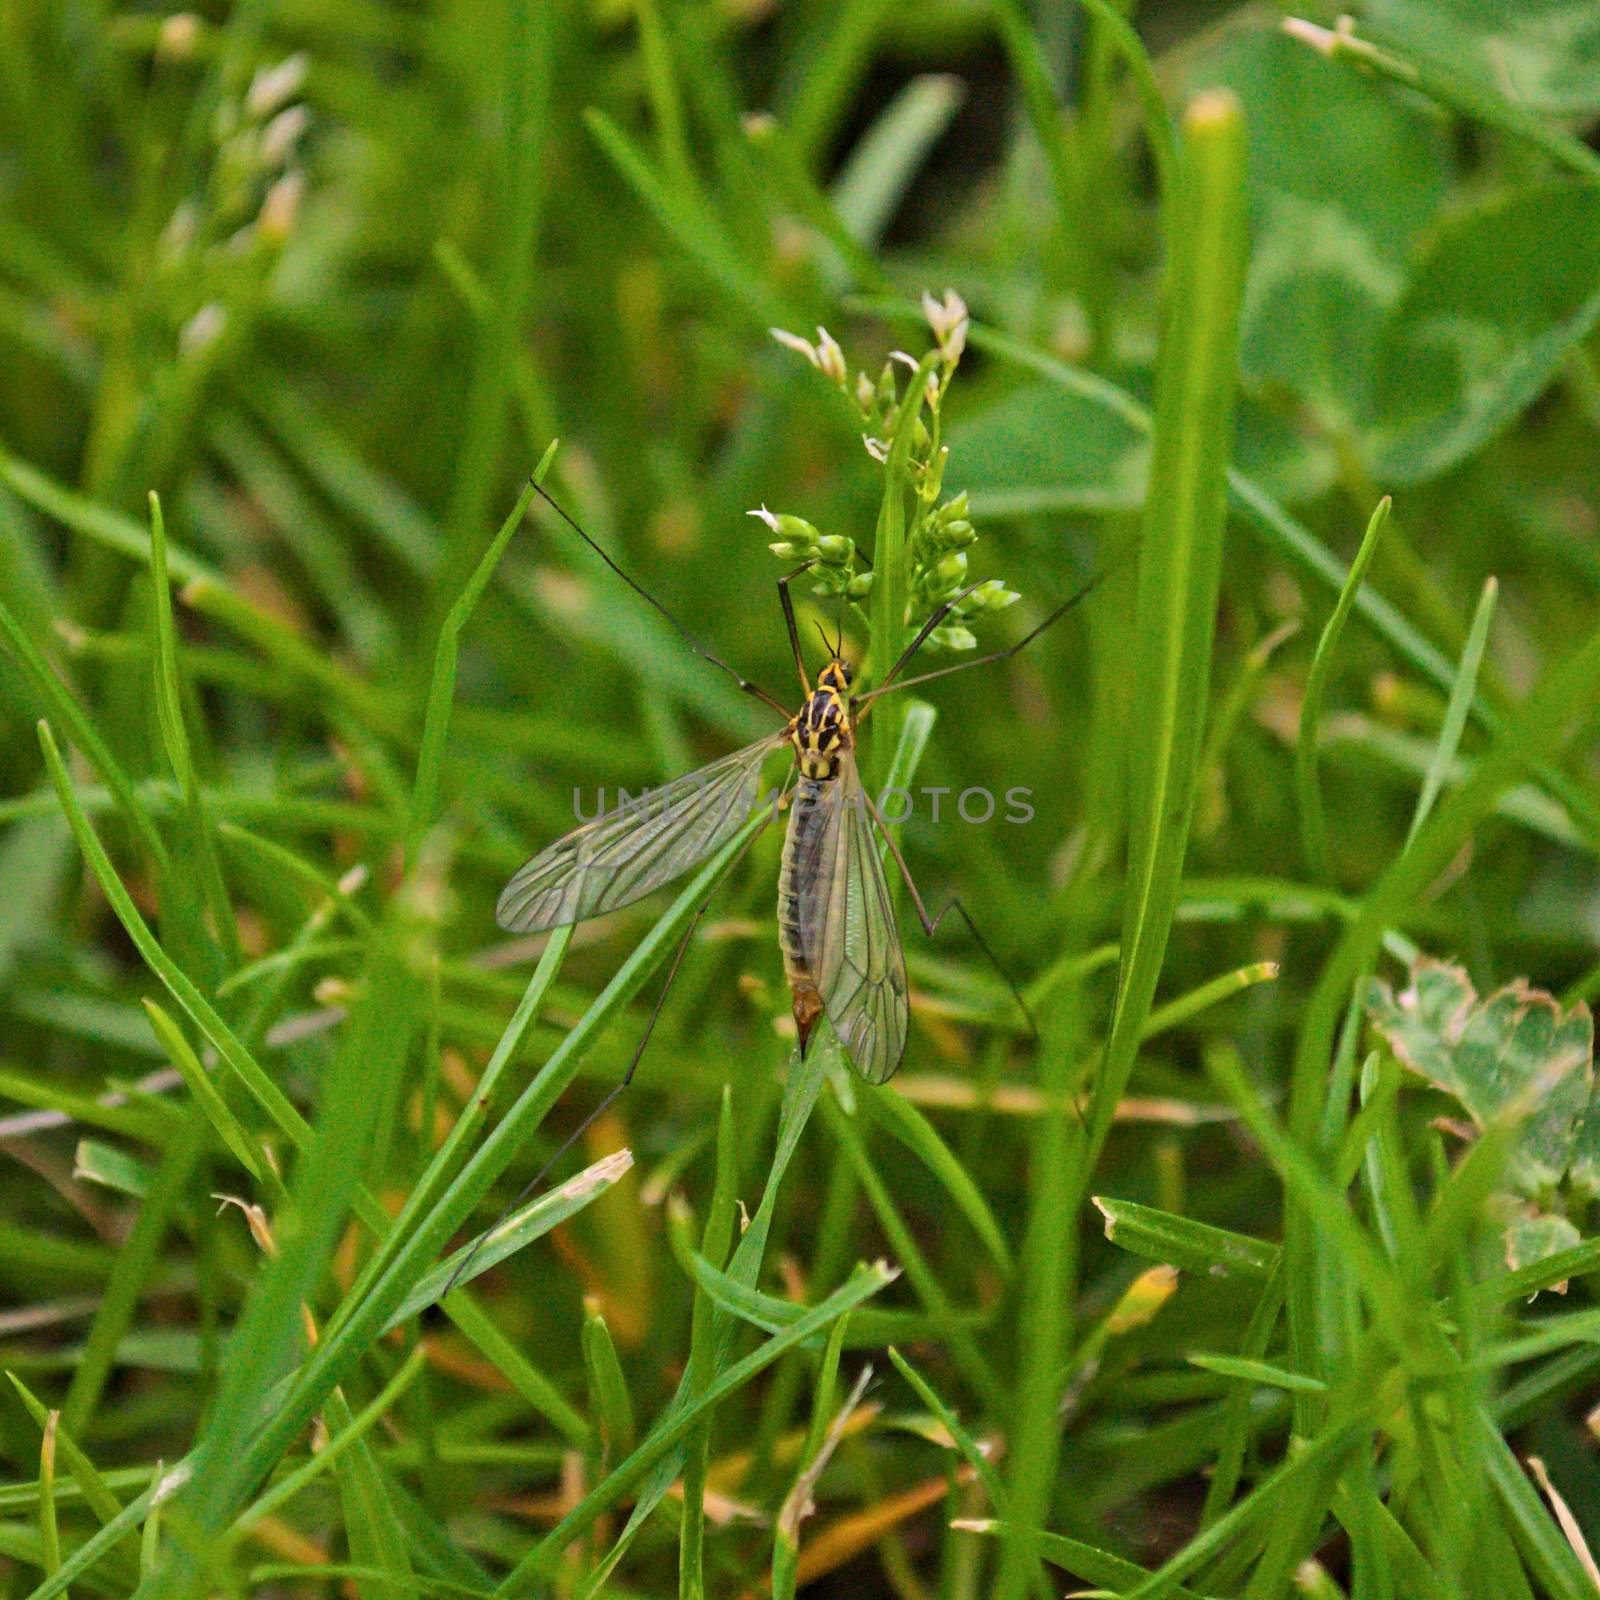 Big mosquito in grass, closeup